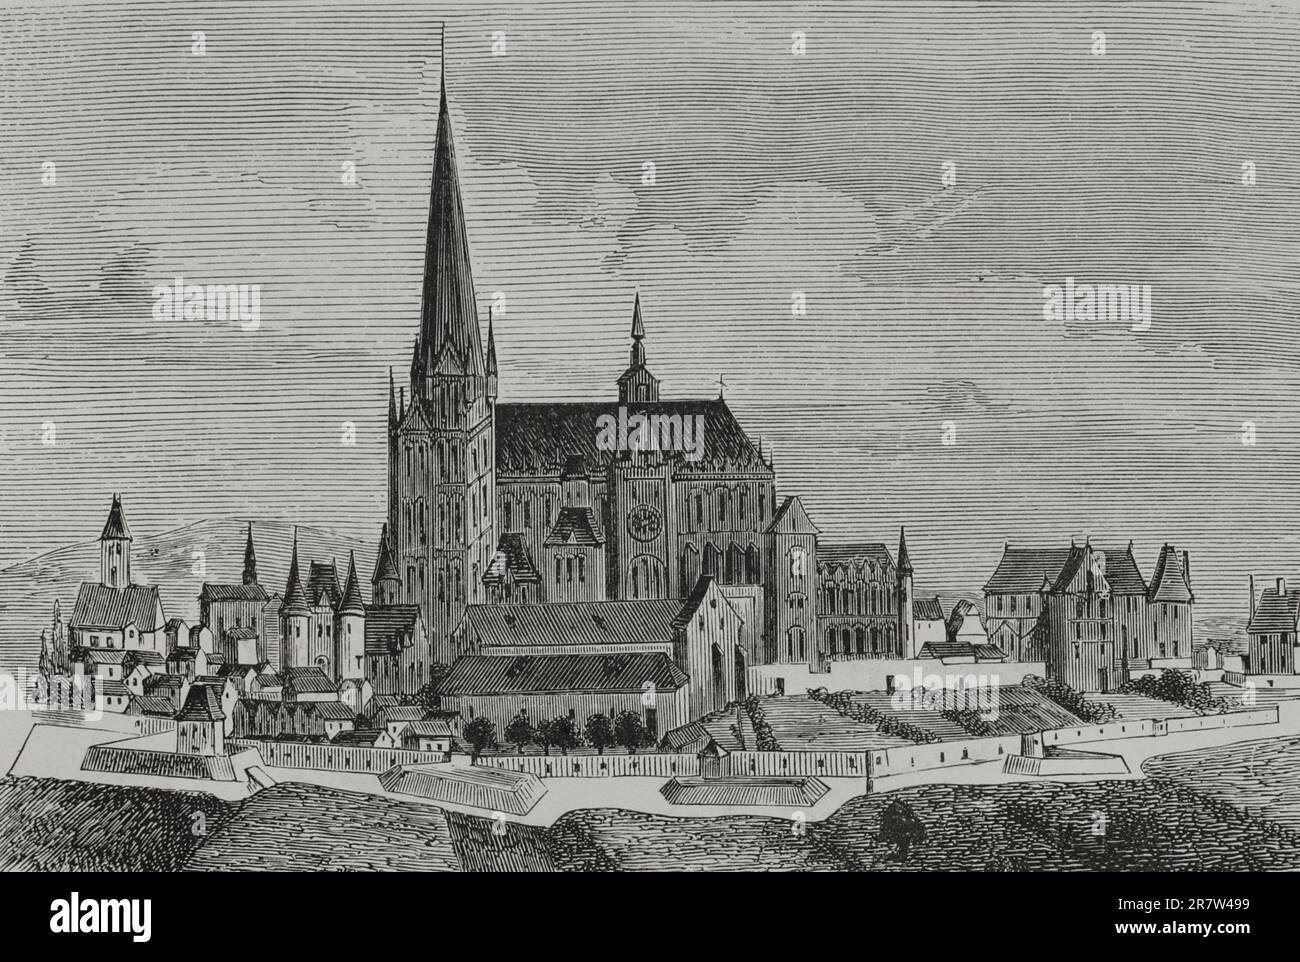 France. Saint-Denis Abbey. Engraving. 'Les Arts au Moyen Age et a l'Epoque de la Renaissance', by Paul Lacroix. Paris, 1877. Stock Photo